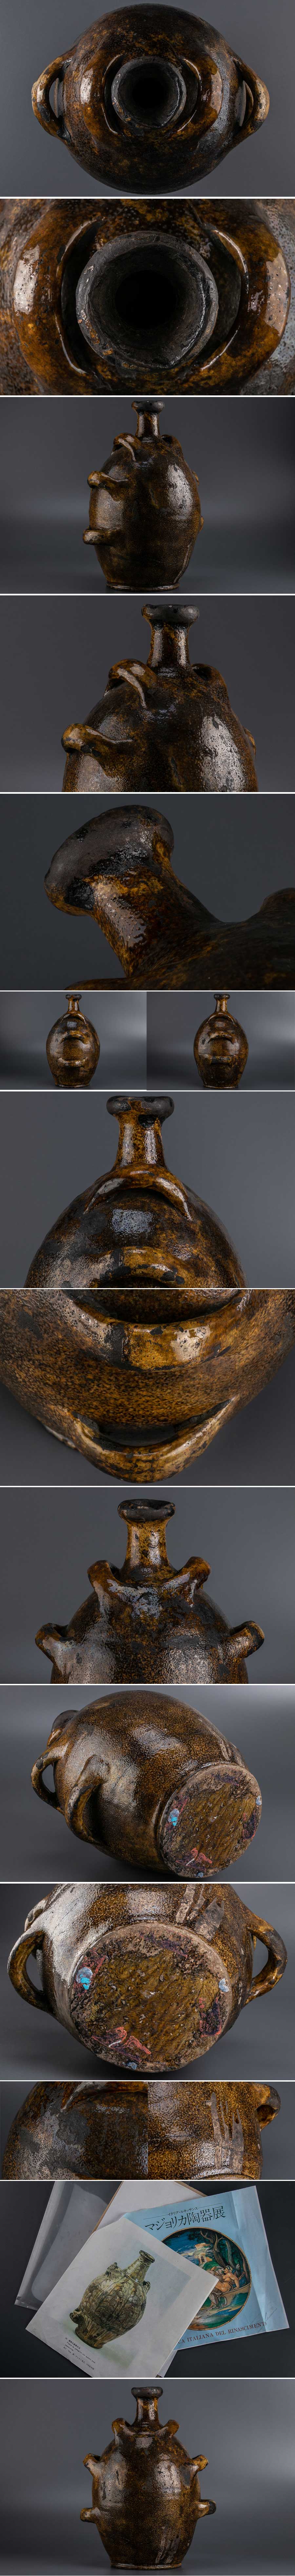 低価安い『 西洋古陶器 茶釉手付水注 8864 』 発掘品 考古学 古美術 オブジェ インテリア 西洋美術 花瓶 リビング キャラリー 1700年以前